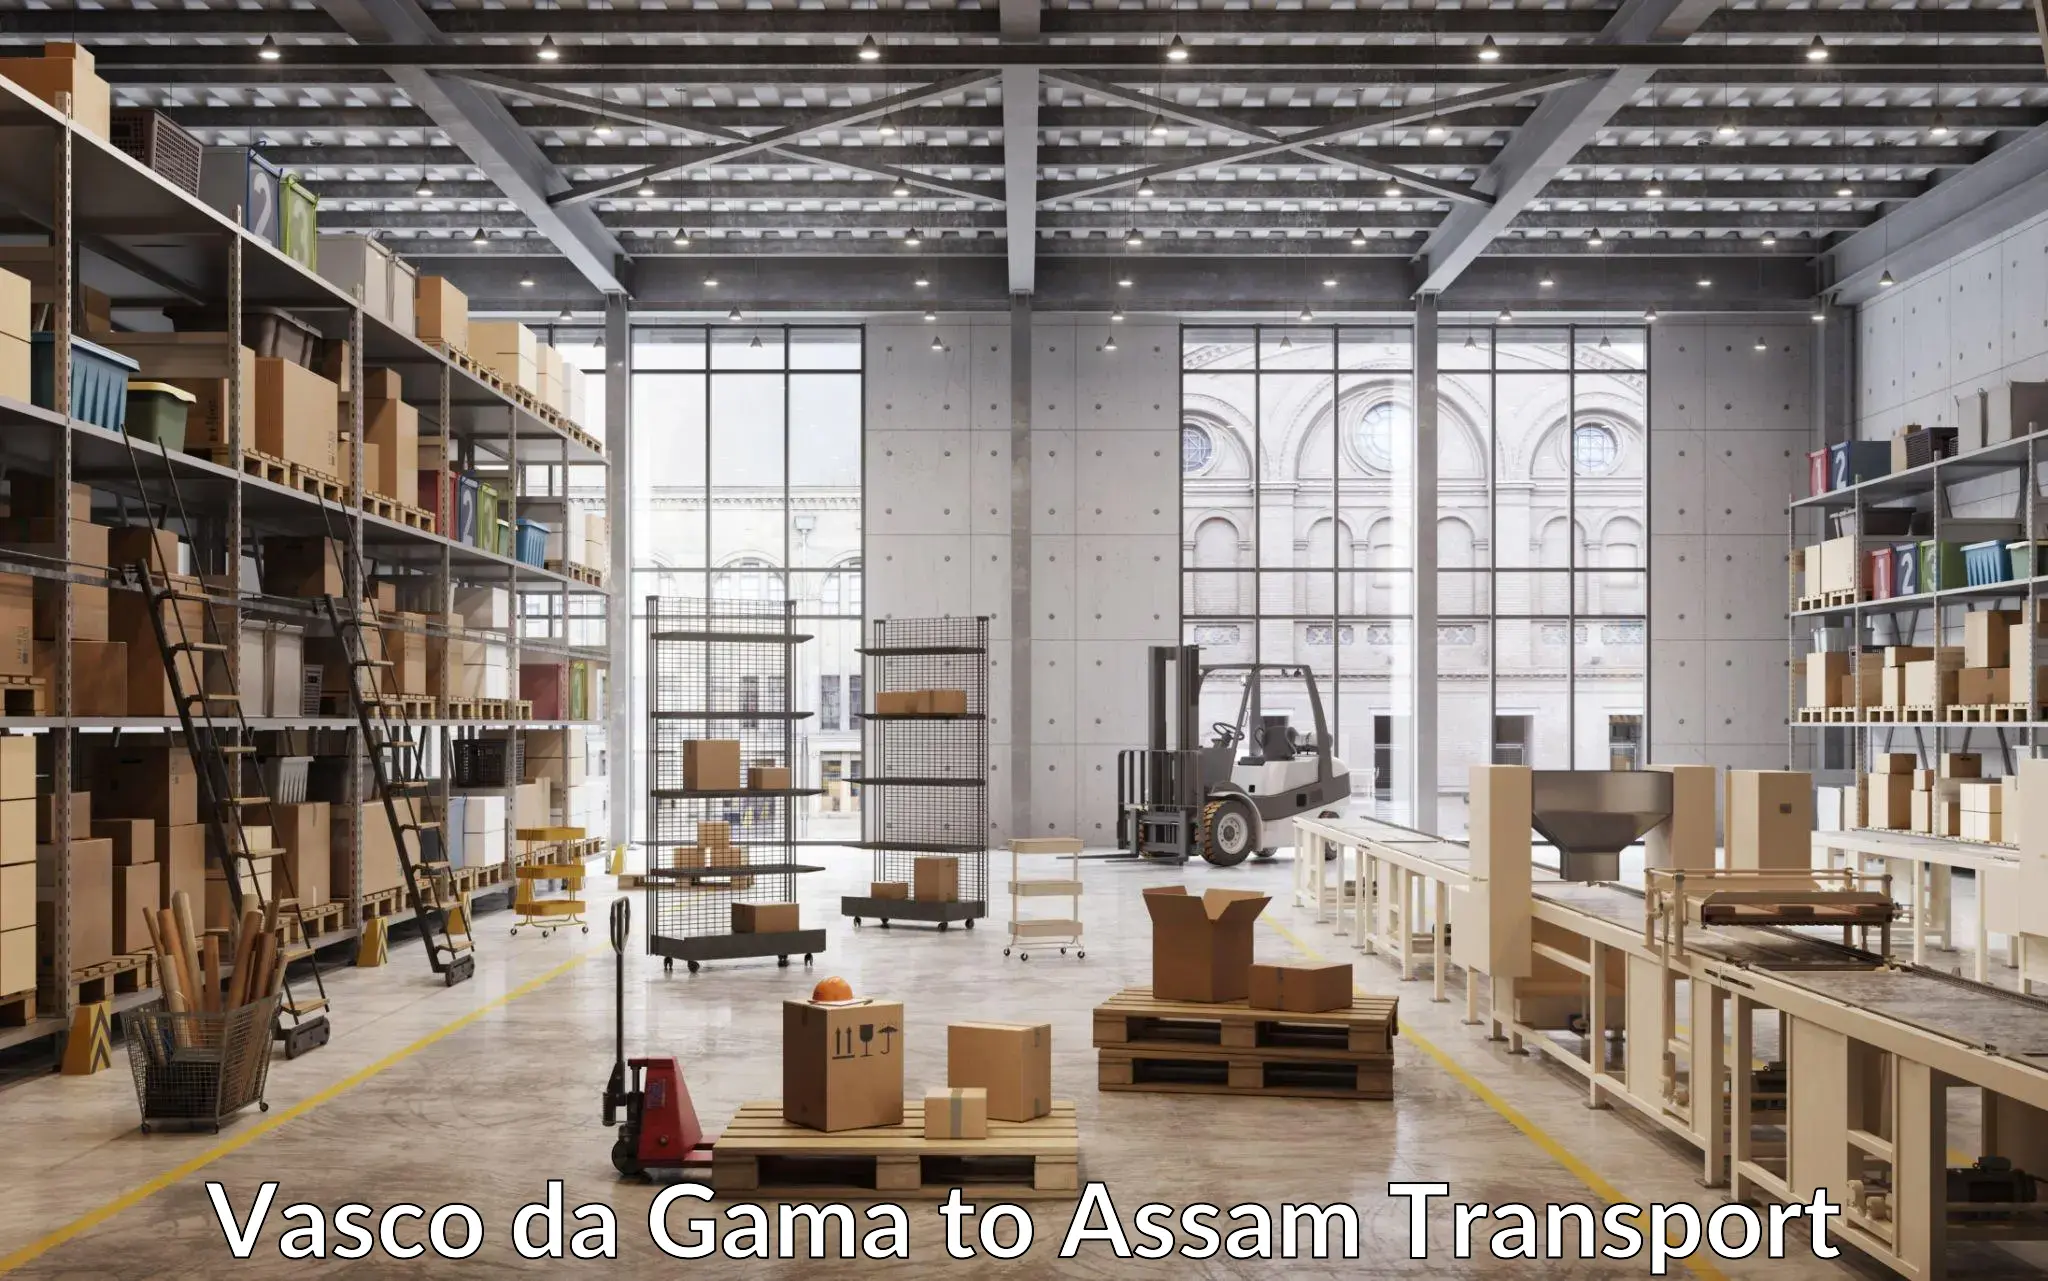 International cargo transportation services Vasco da Gama to Assam